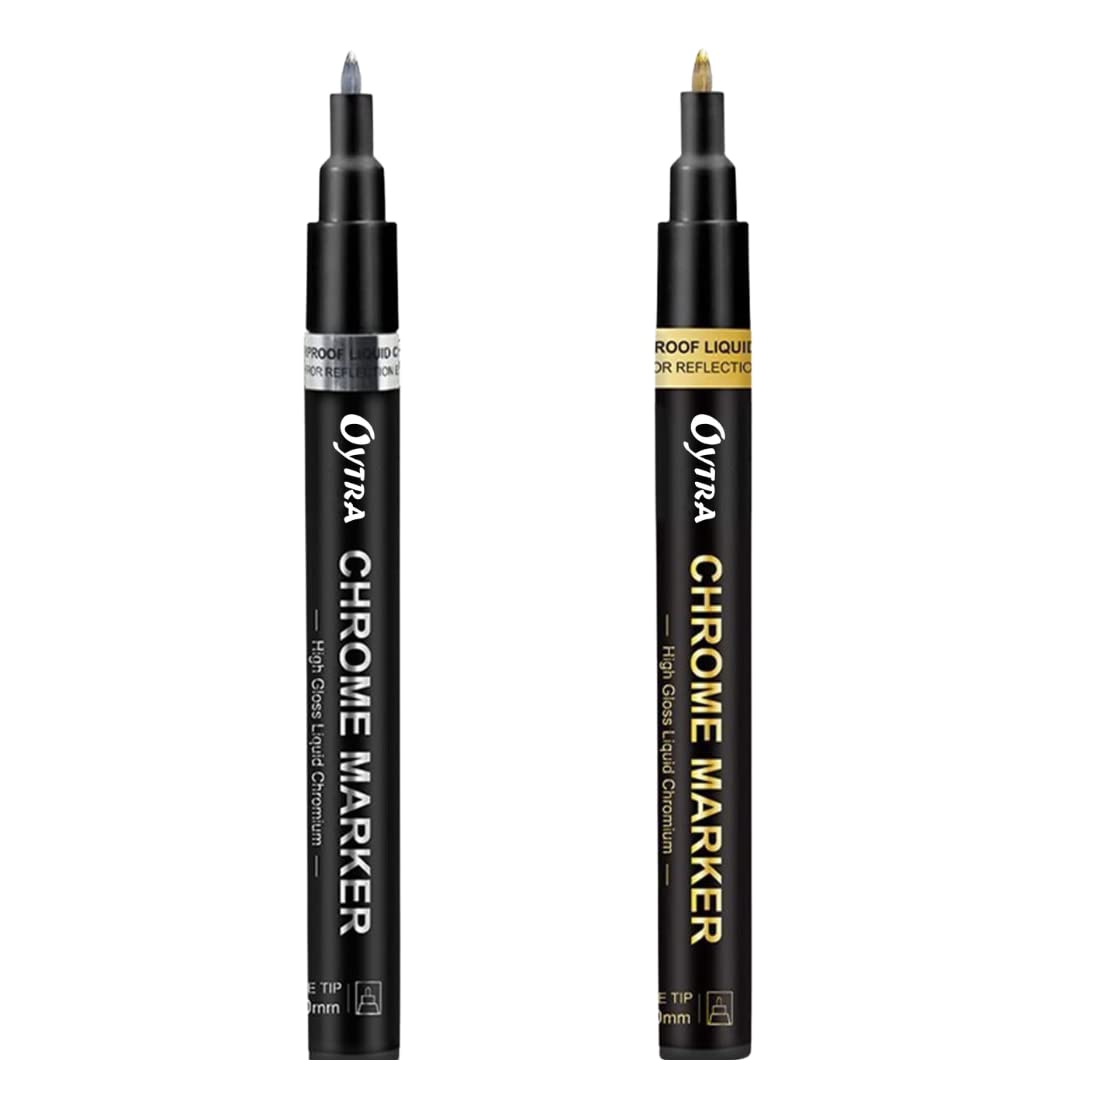 Chrome Marker Set 2 Pcs/Set, Golden Pens, Tip 1mm & 2-3mm - Oytra